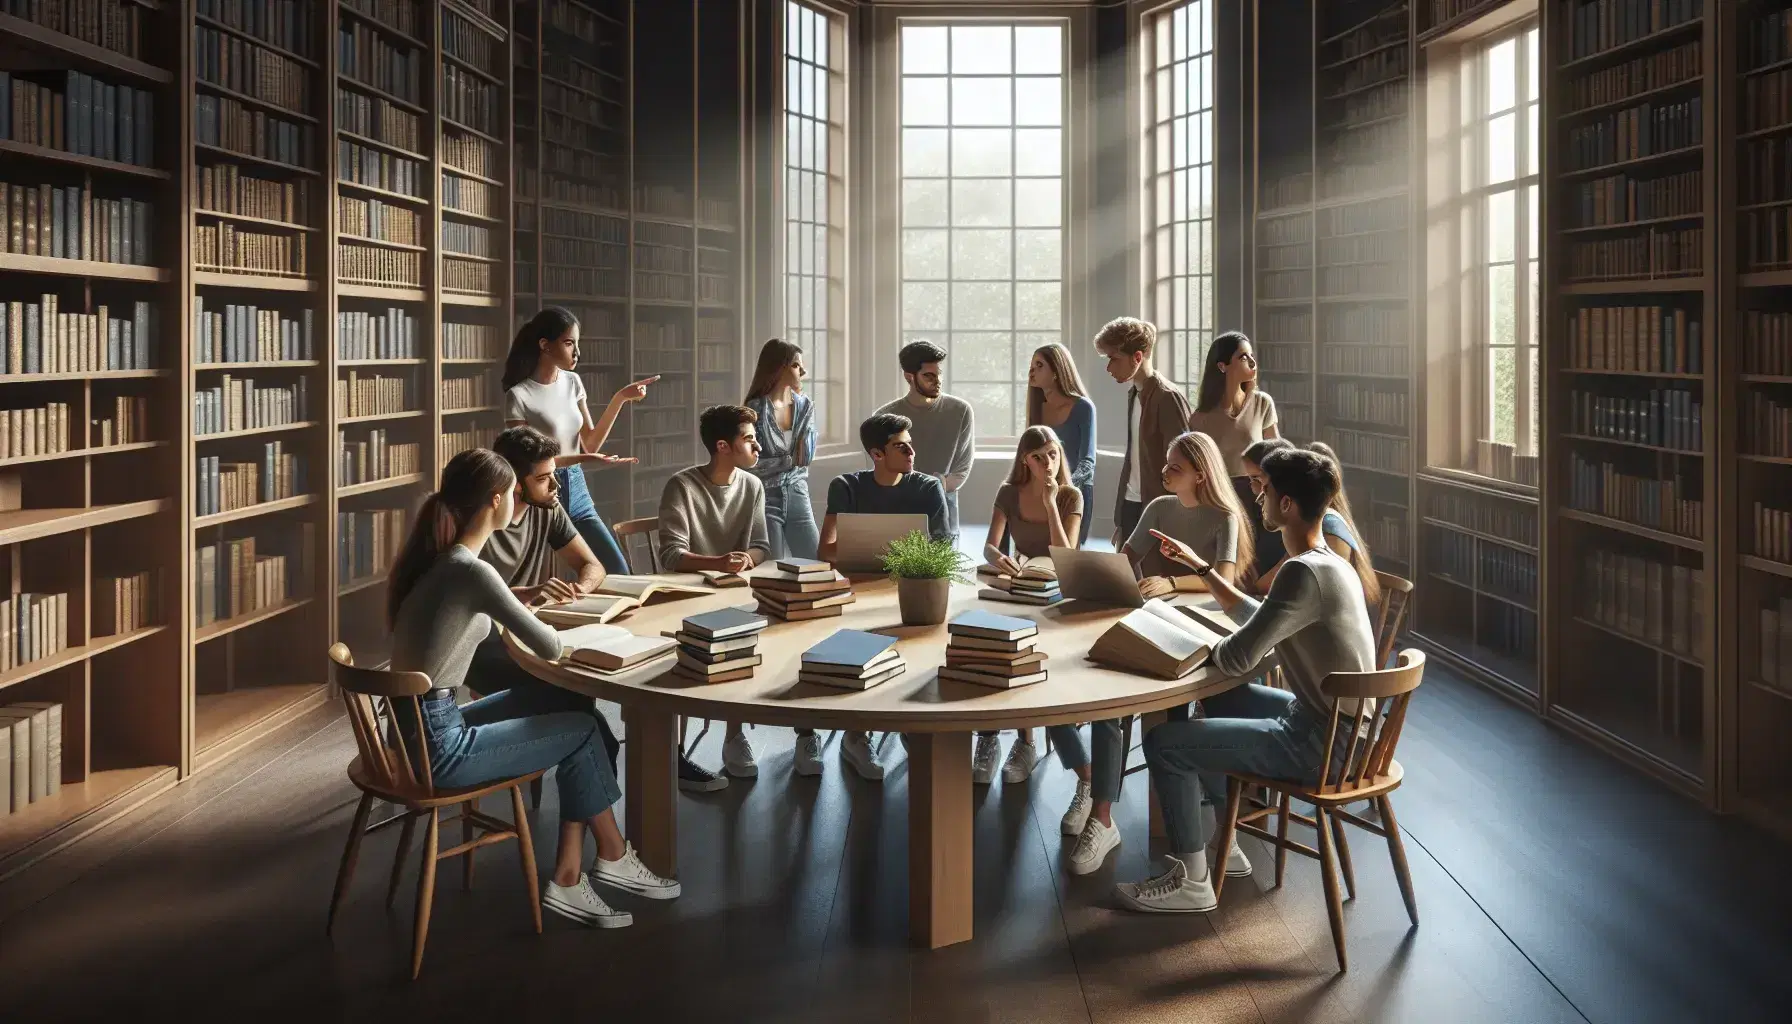 Grupo de jóvenes adultos diversos en animada discusión académica en biblioteca, rodeados de libros, tablets y laptops sobre mesa redonda bajo luz natural.